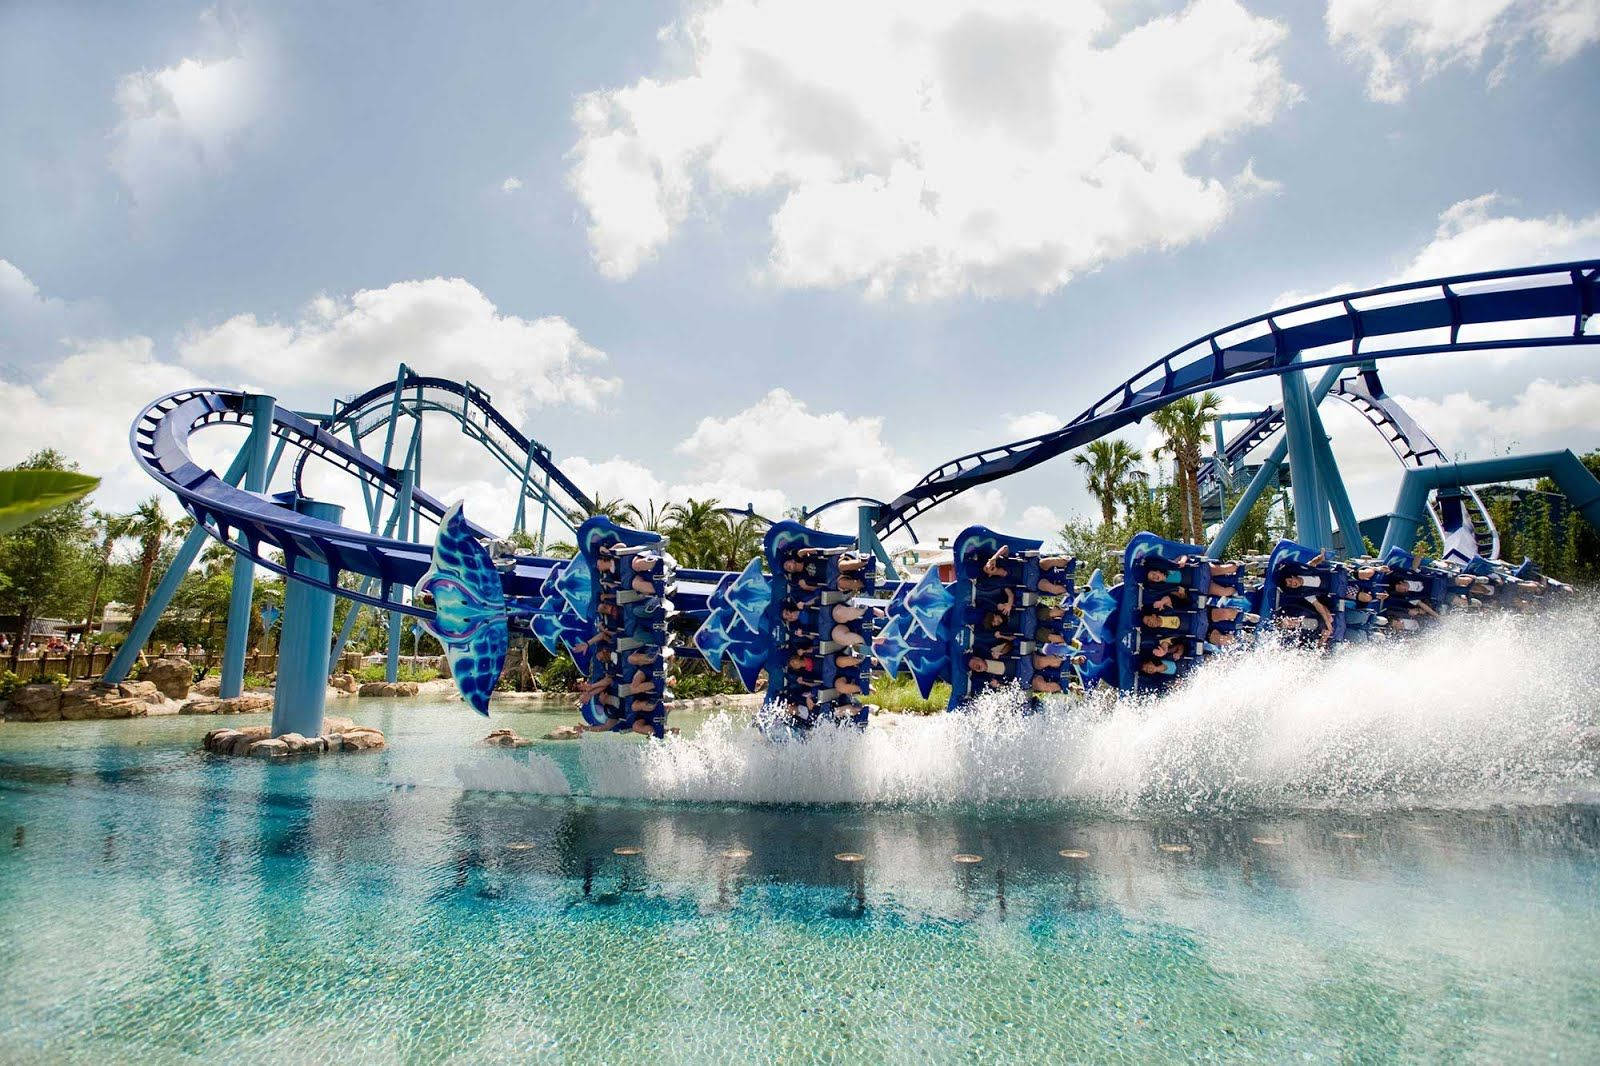 Roller Coaster With Splashing Water